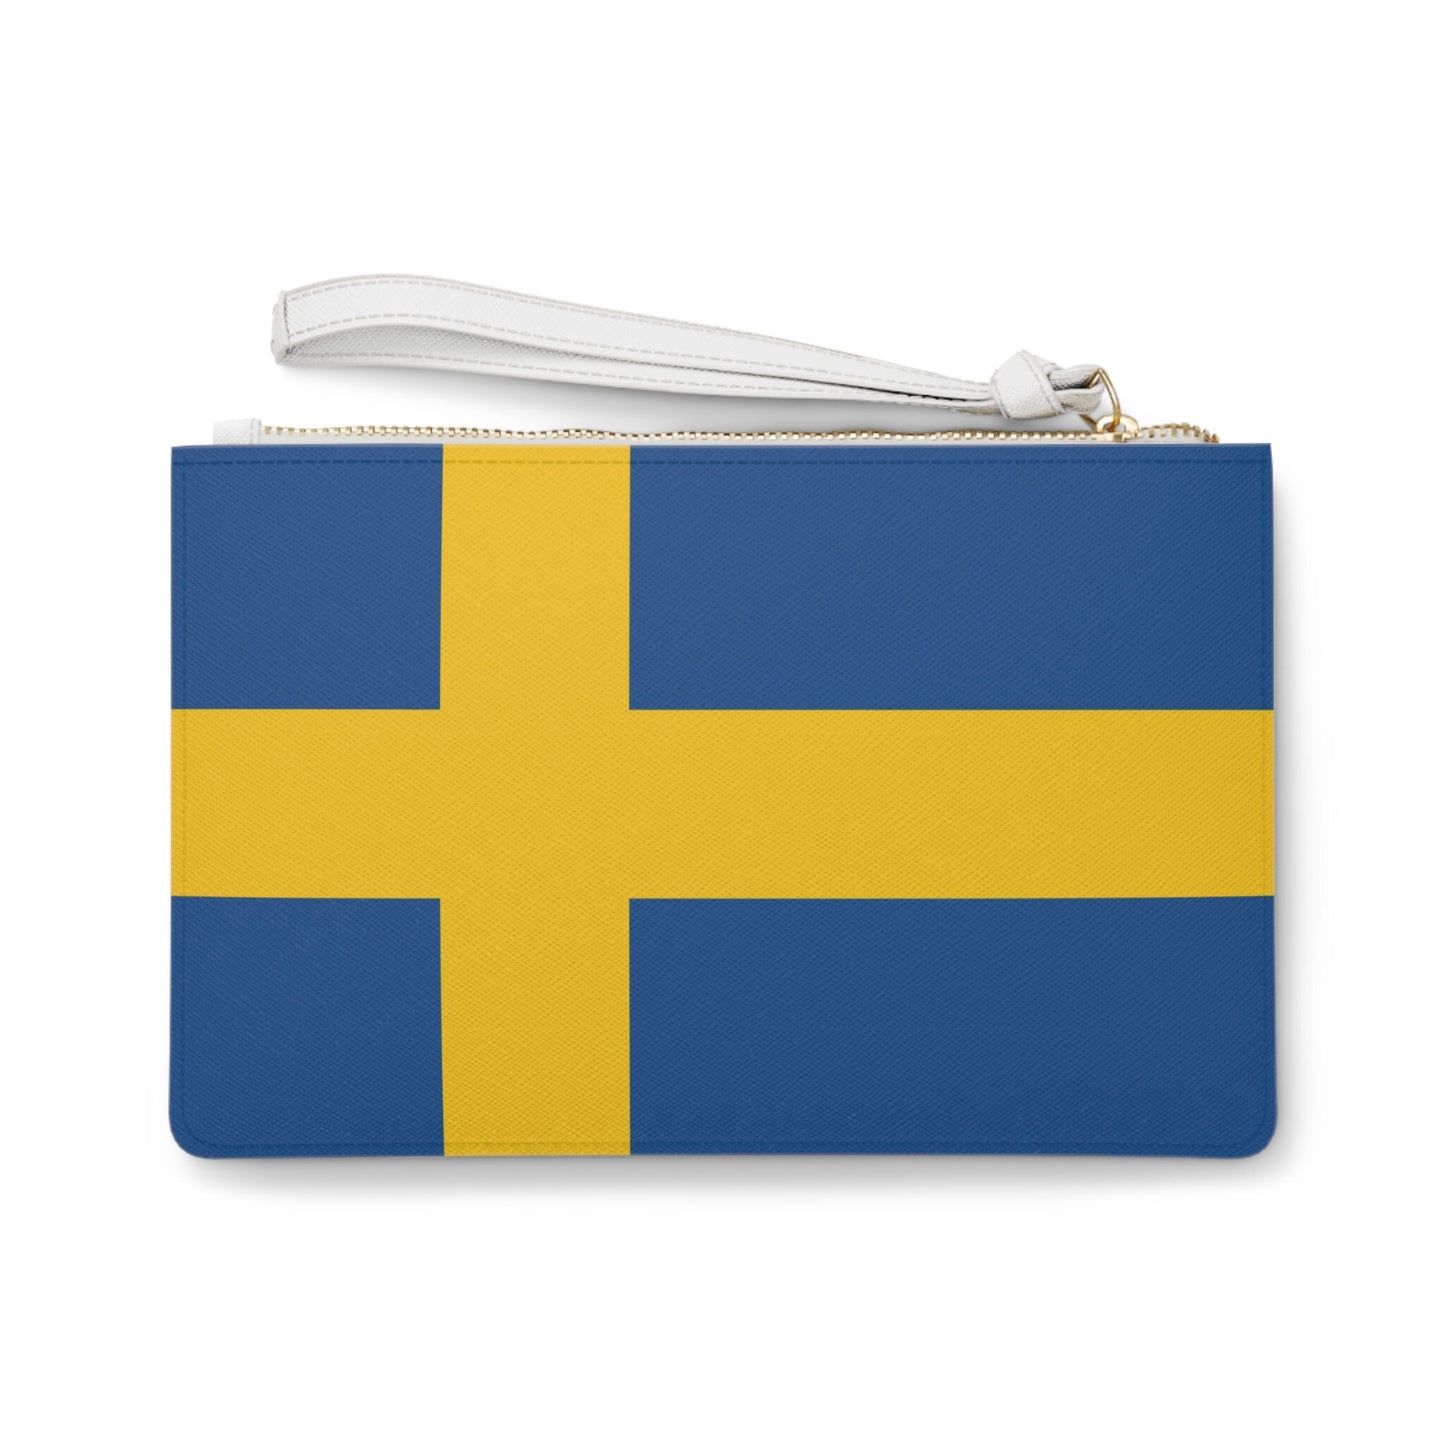 Sweden Flag Clutch Bag